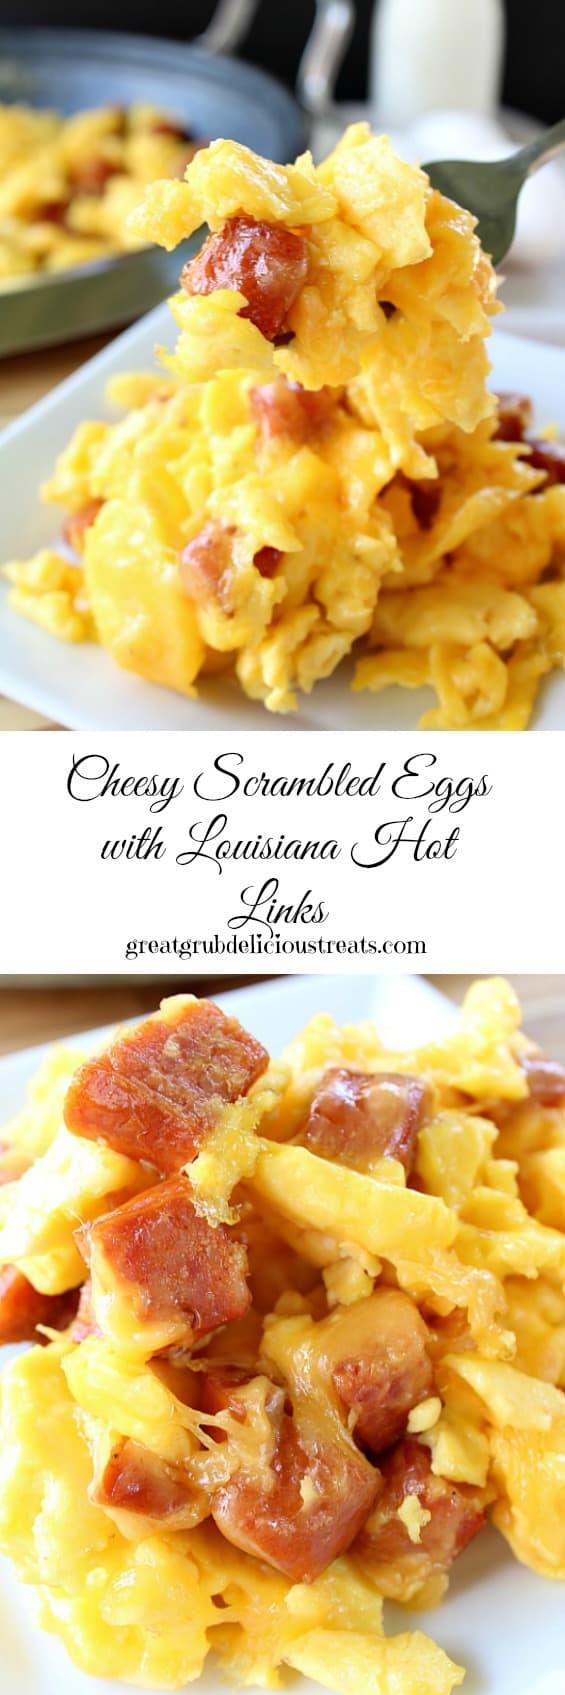 Cheesy Scrambled Eggs with Louisiana Hot Links